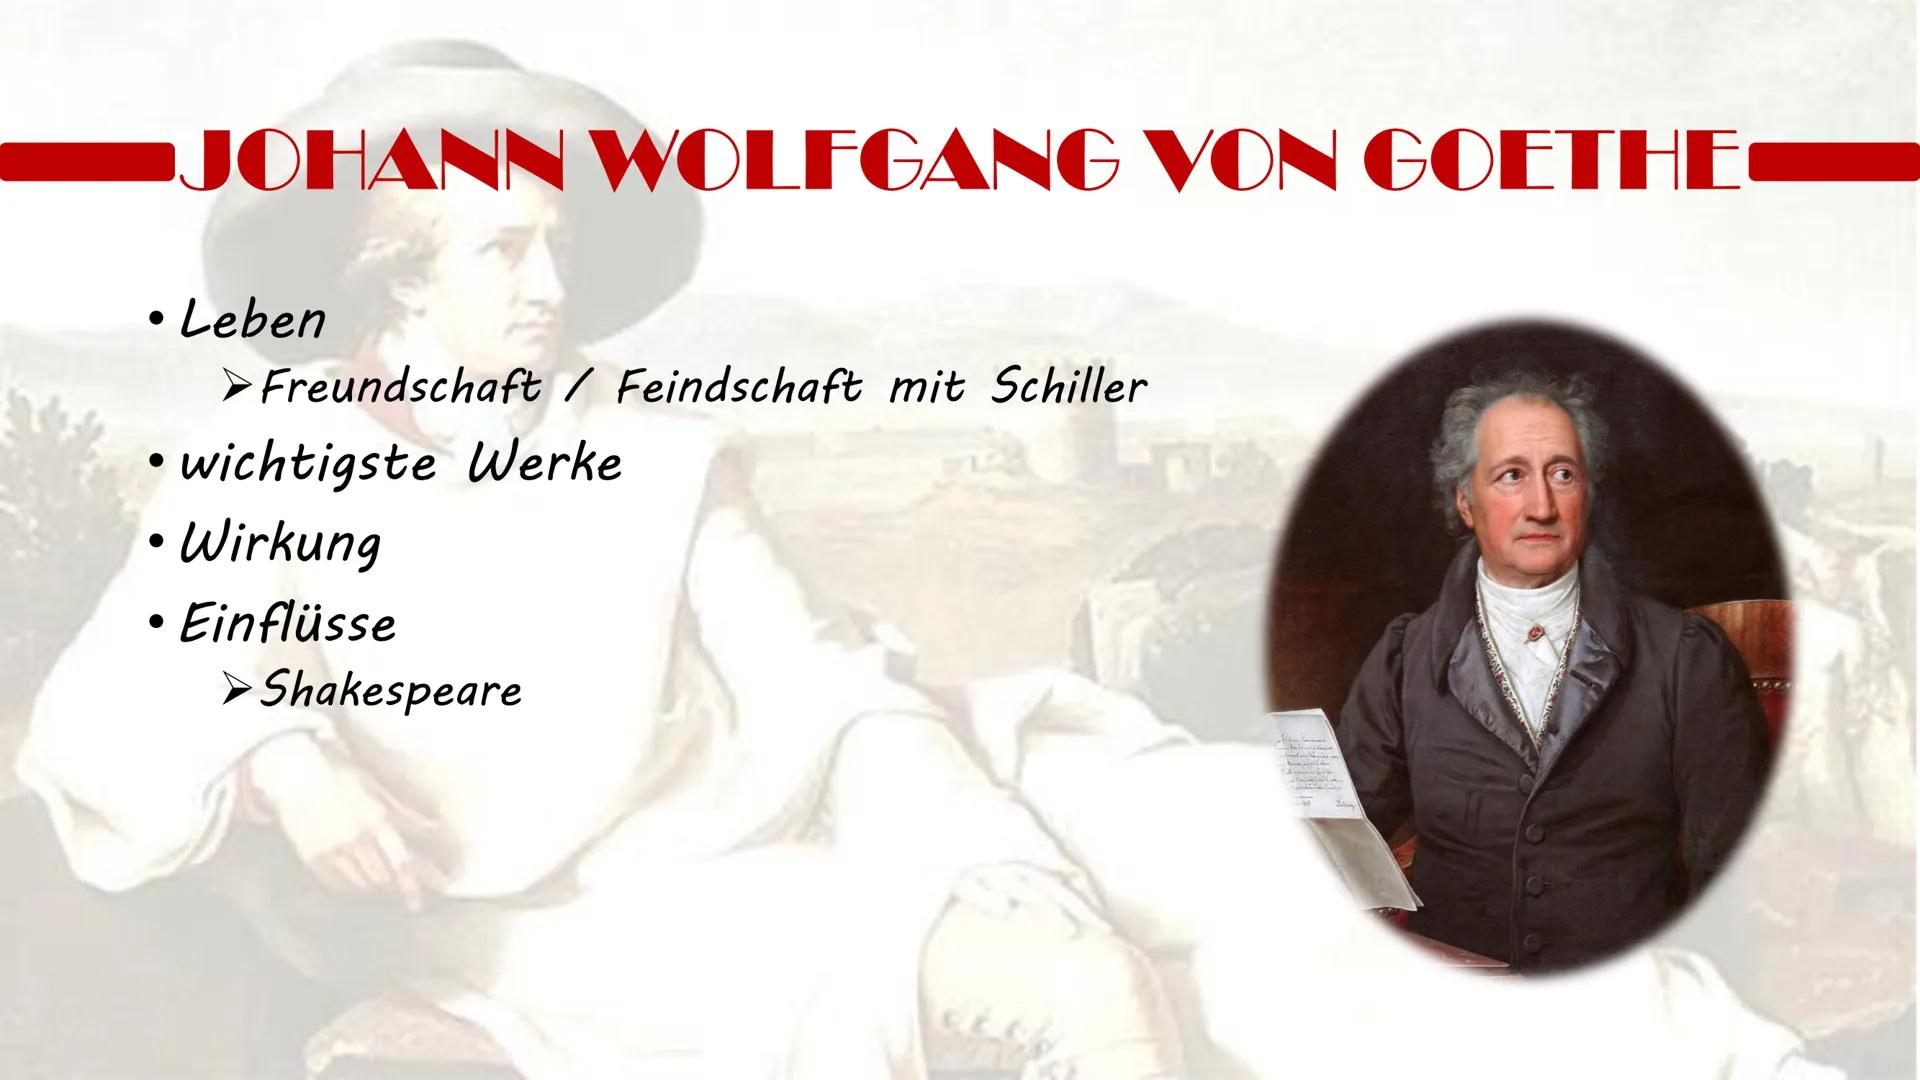 JOHANN WOLFGANG VON GOETHE
leben
geboren: 28. August 1749 in Frankfurt am Main
• erhielt mit Schwester Cornelia Frederike teils vom Vater Pr